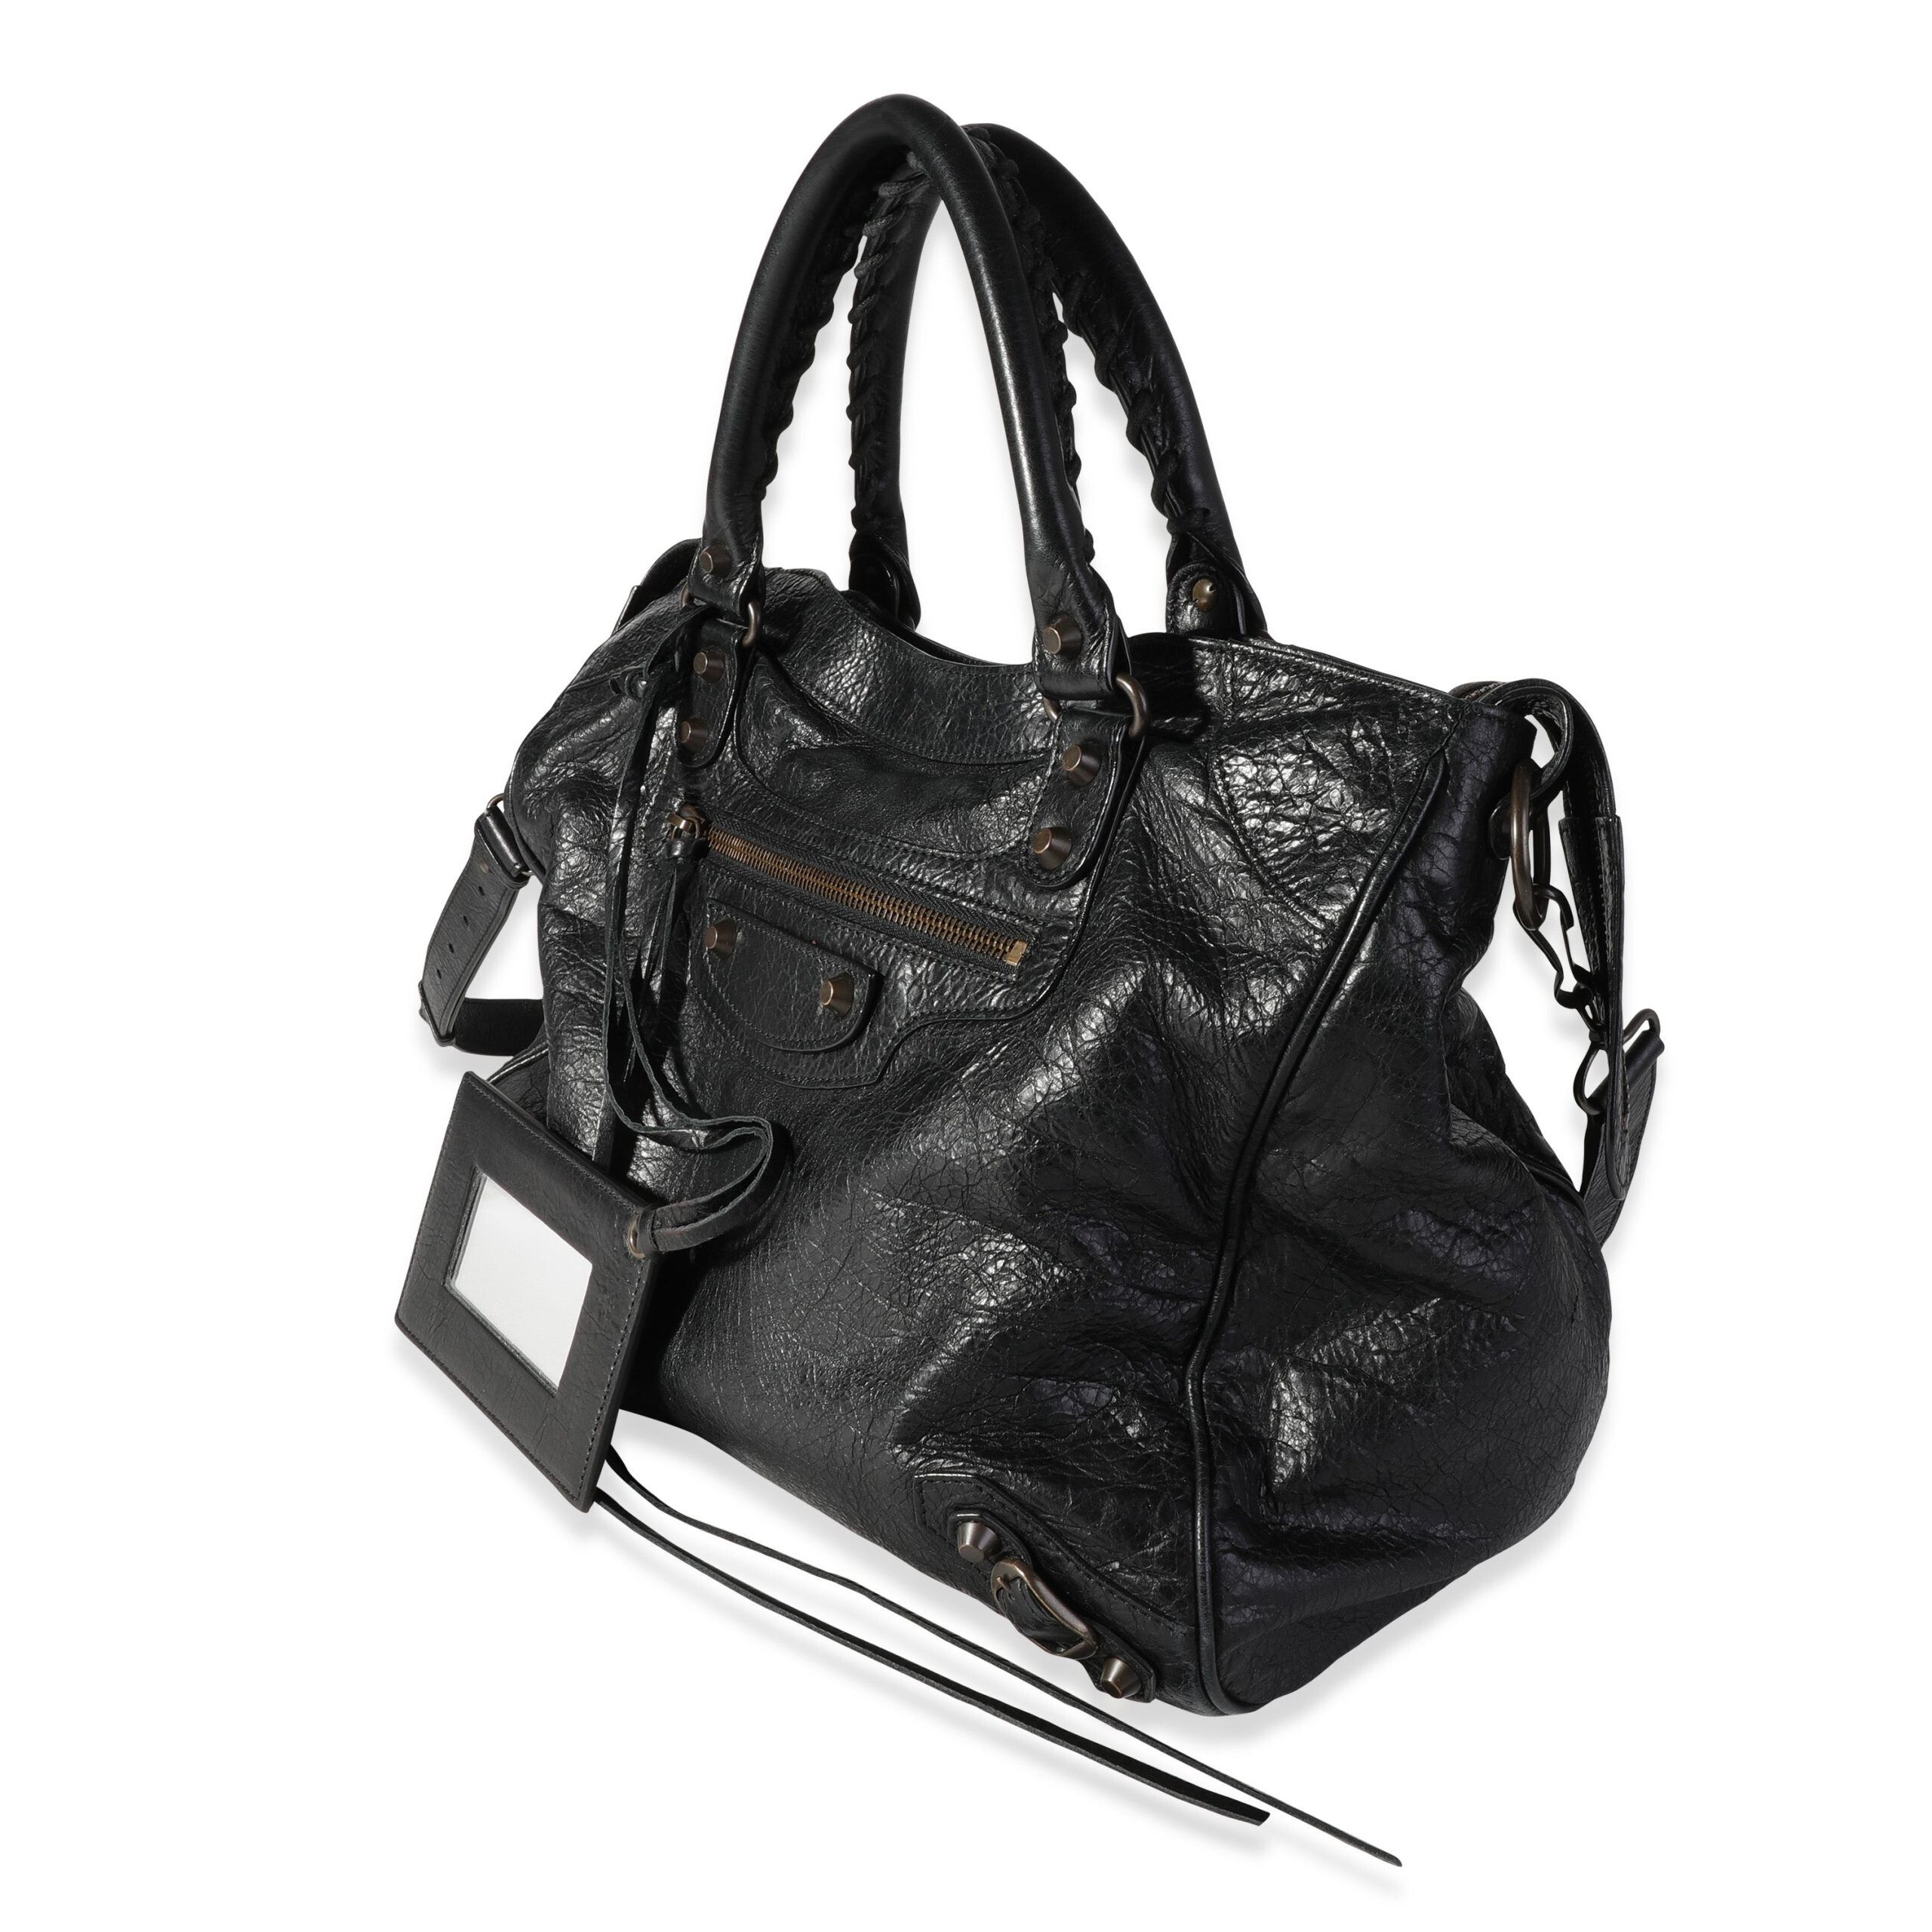 Balenciaga Balenciaga Black Leather Classic Velo Bag Size ONE SIZE - 2 Preview